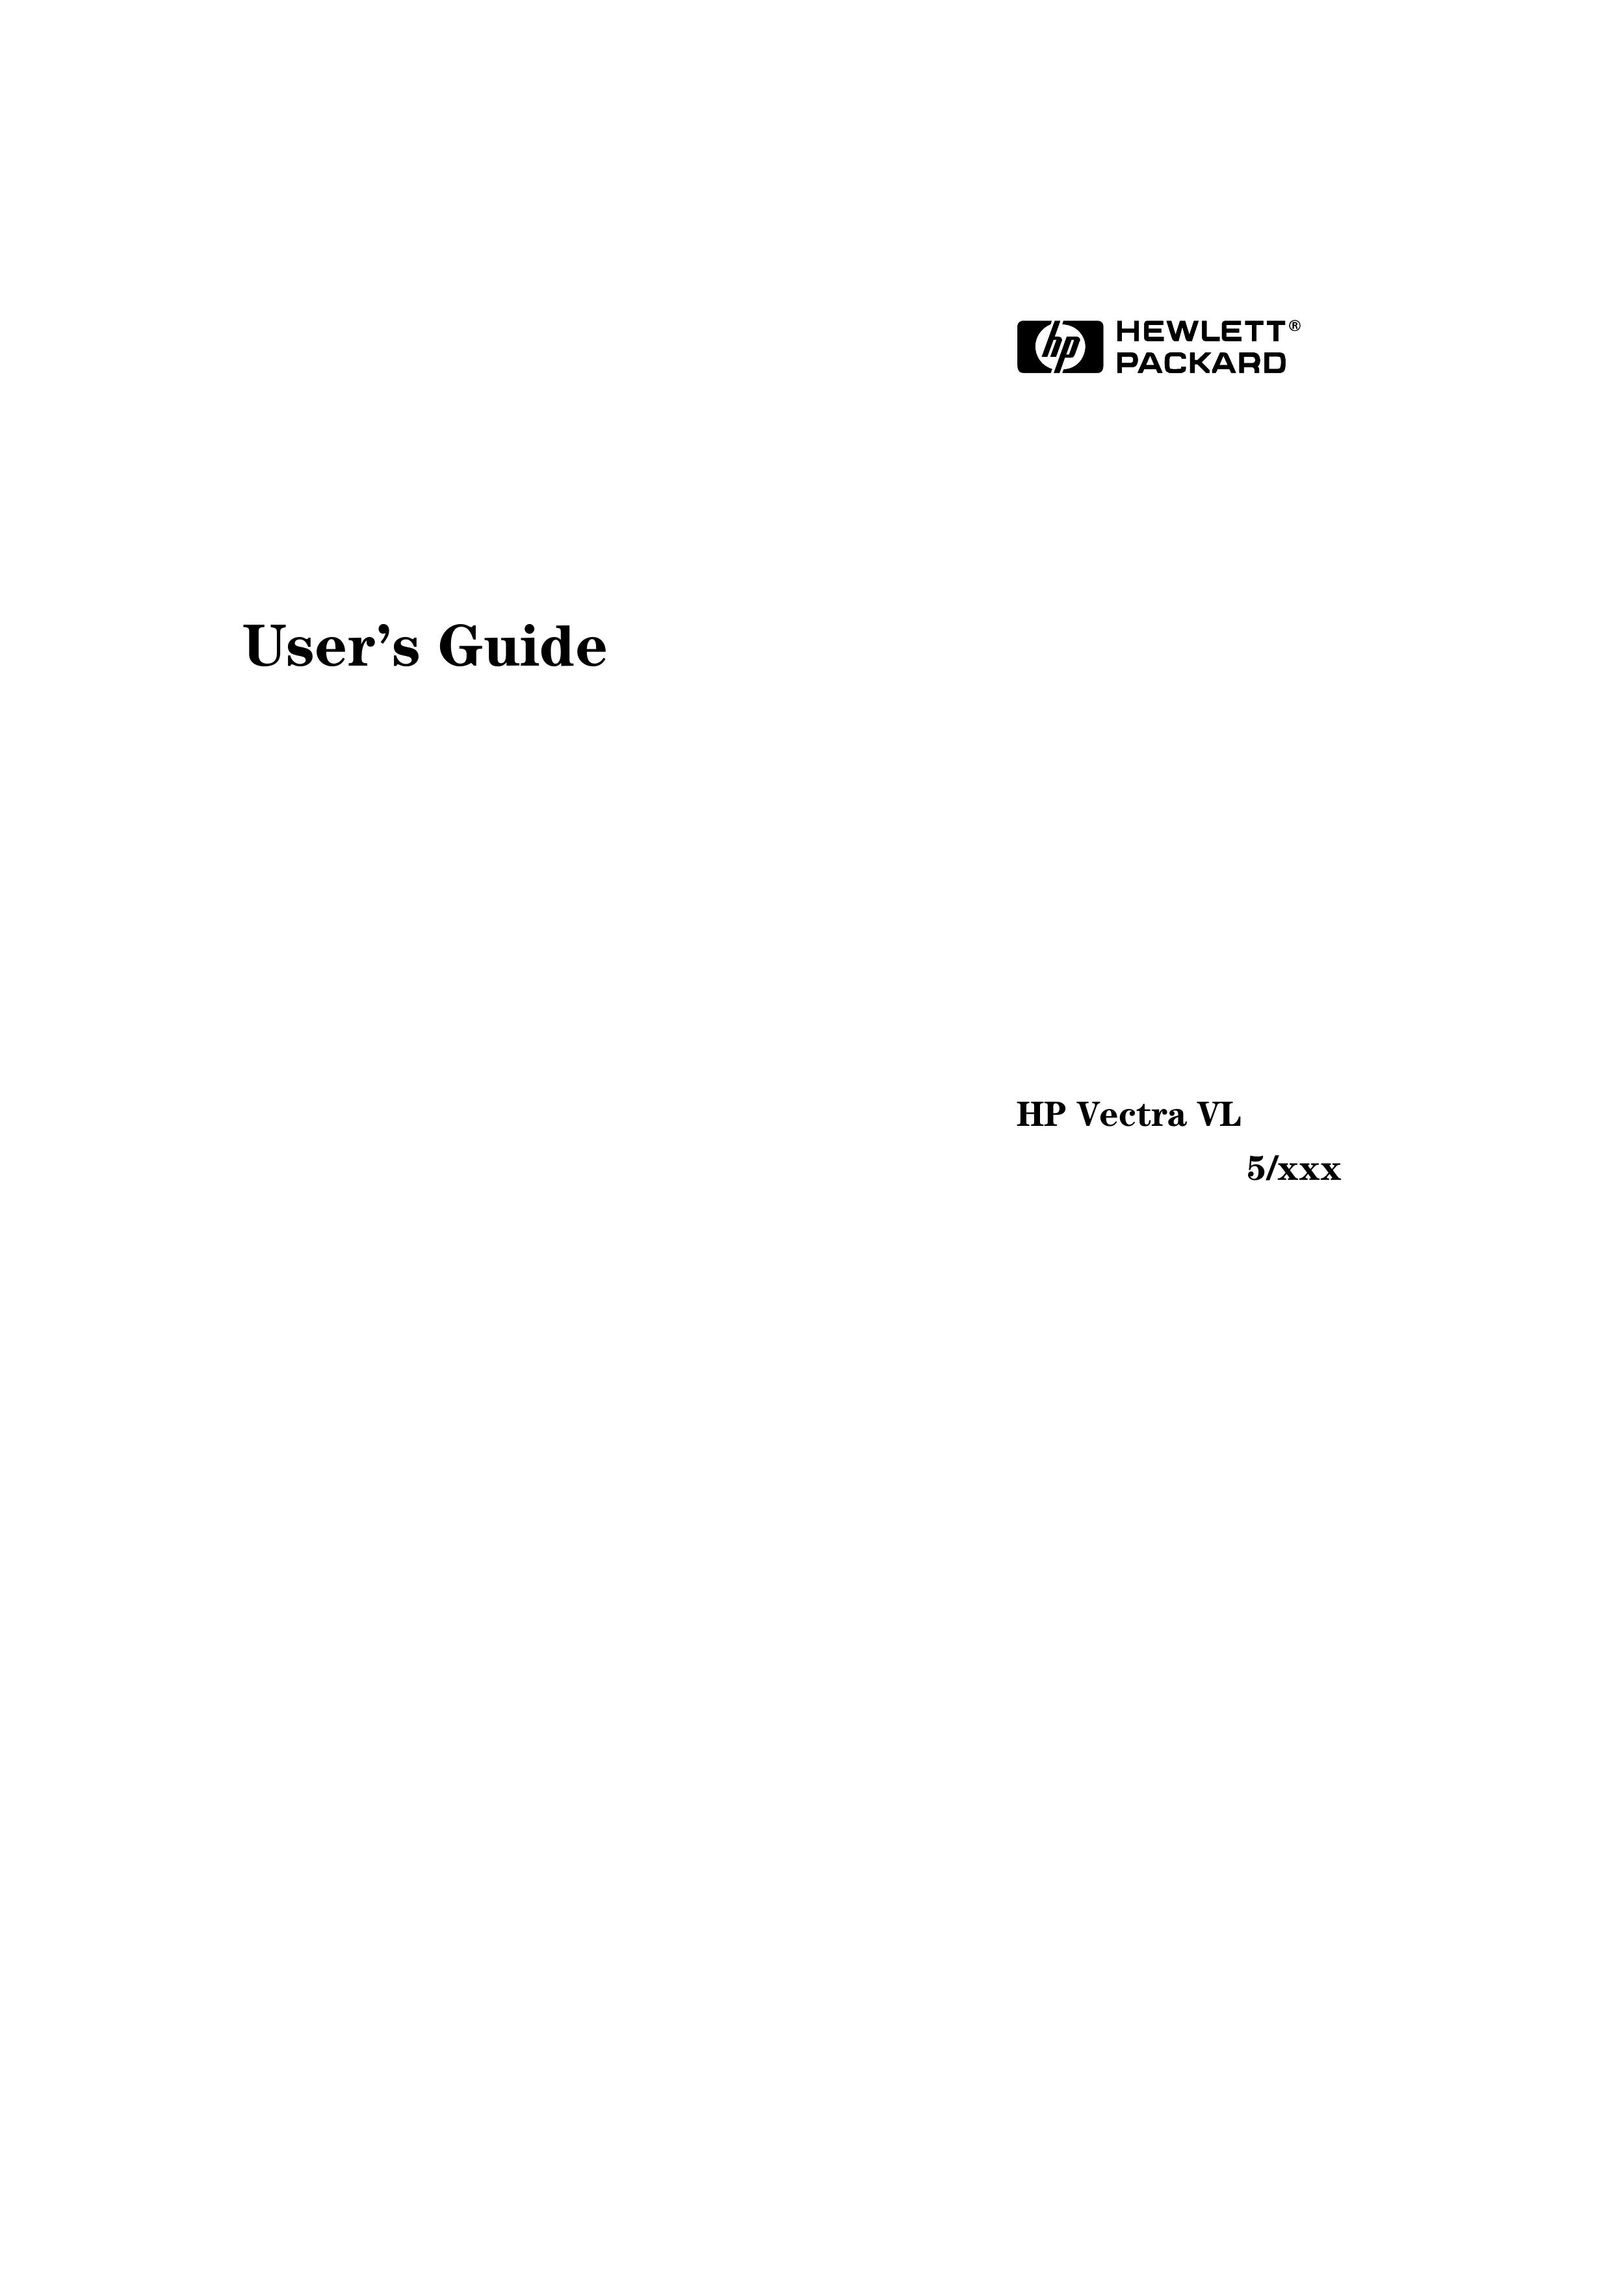 HP (Hewlett-Packard) 5/xxx Personal Computer User Manual